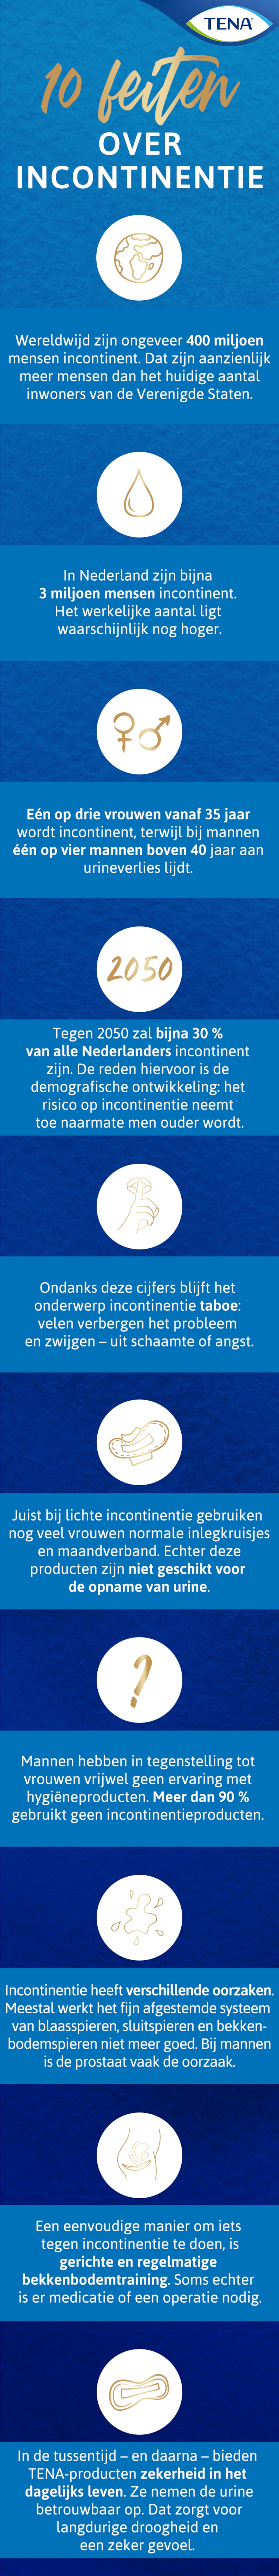 Infografik_10_Fakten_rund_um_Inkontinenz_NL.jpg                                                                                                                                                                                                                                                                                                                                                                                                                                                                     